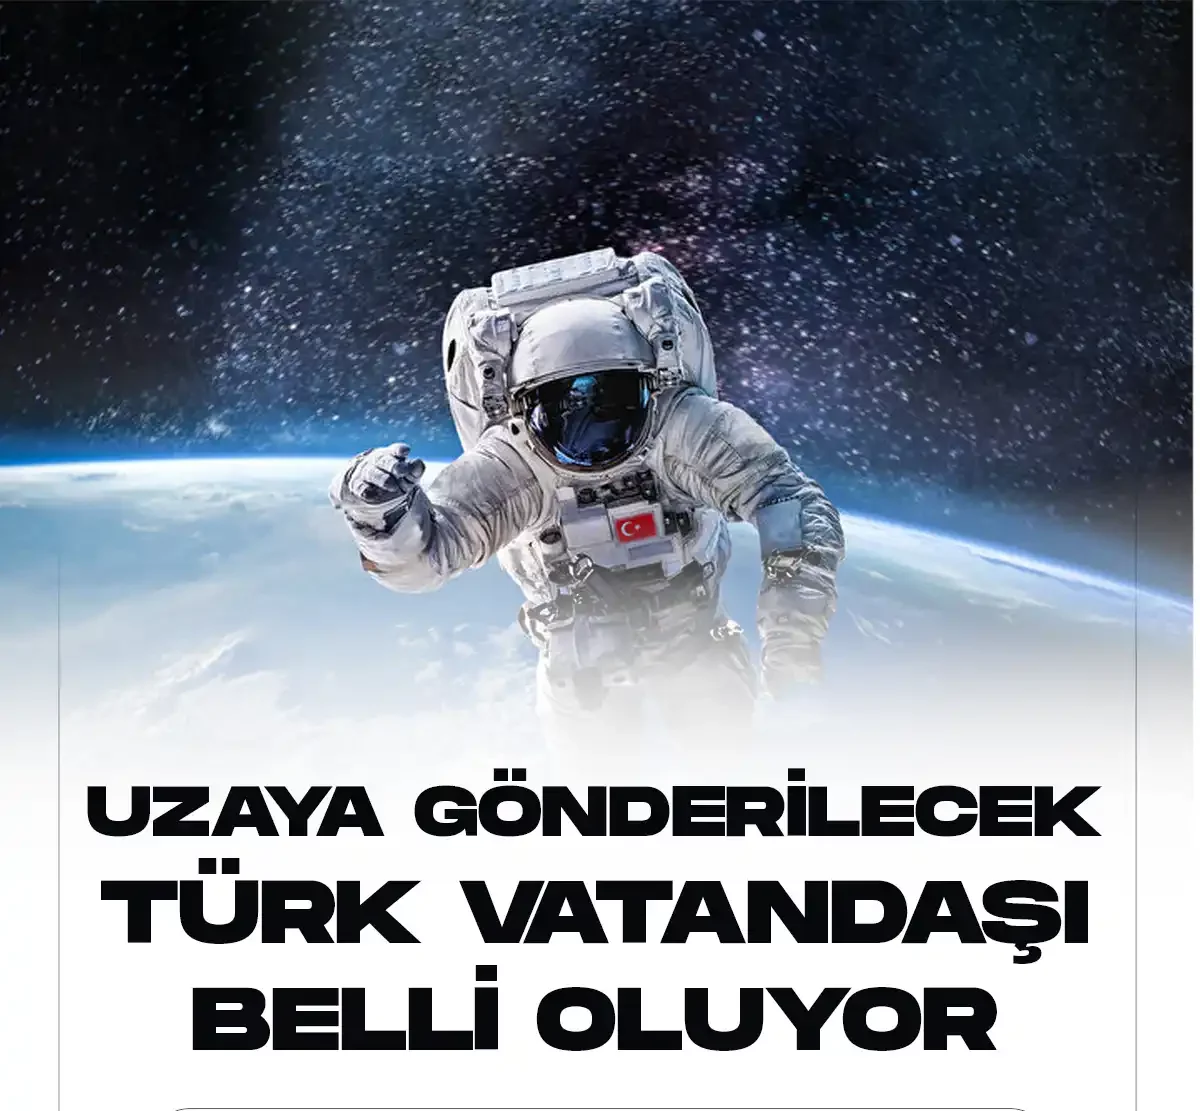 Uzaya gidecek Türk vatandaşı belli oluyor.